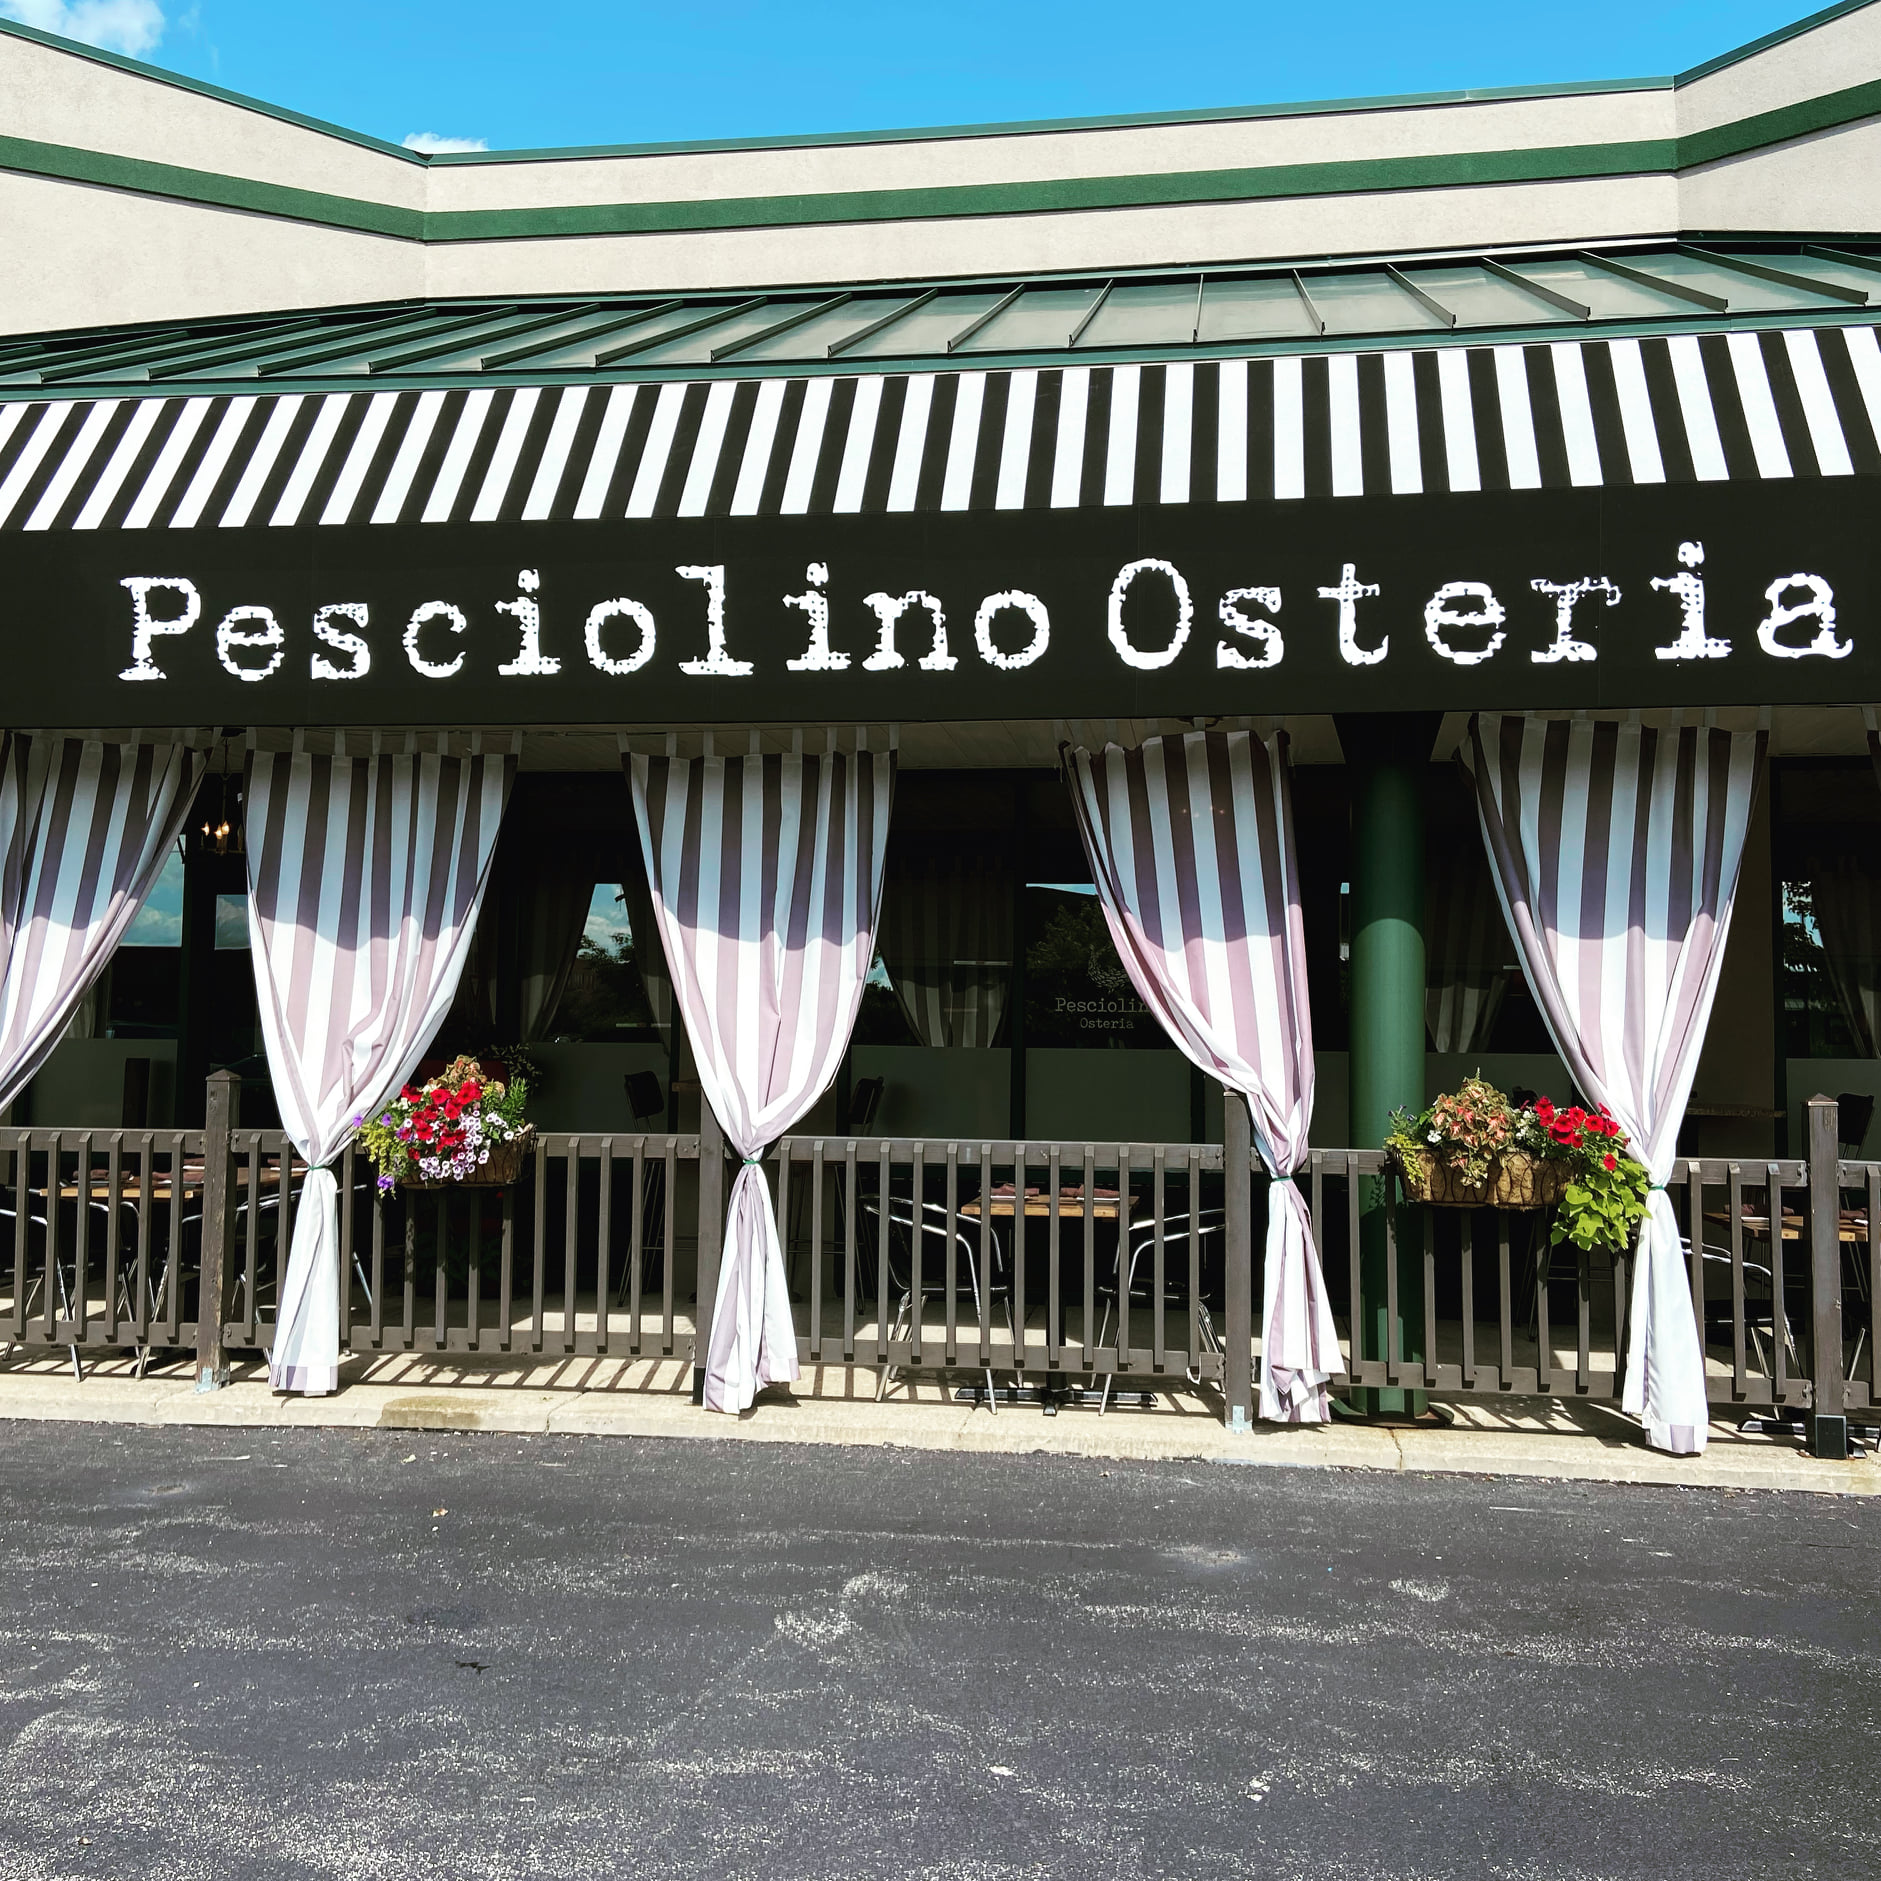 Pesciolino Osteria outside patio